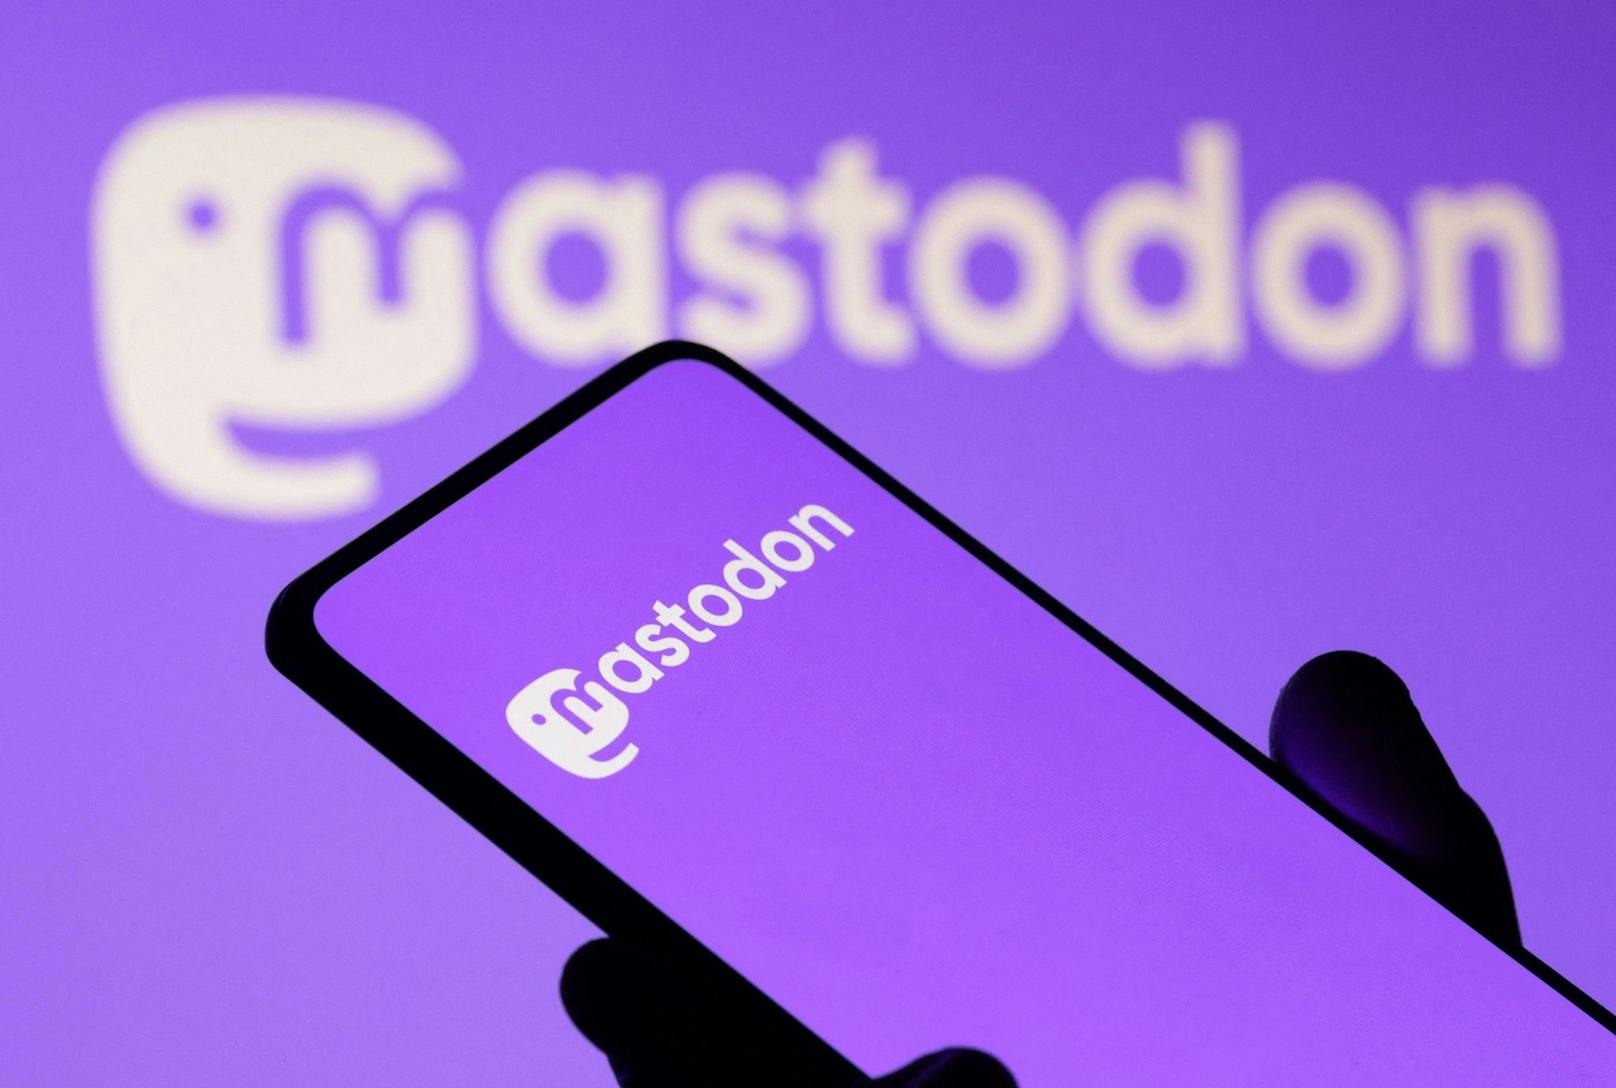 Mastodon lockt Nutzerinnen und Nutzer mit ähnlichen Features wie Twitter.